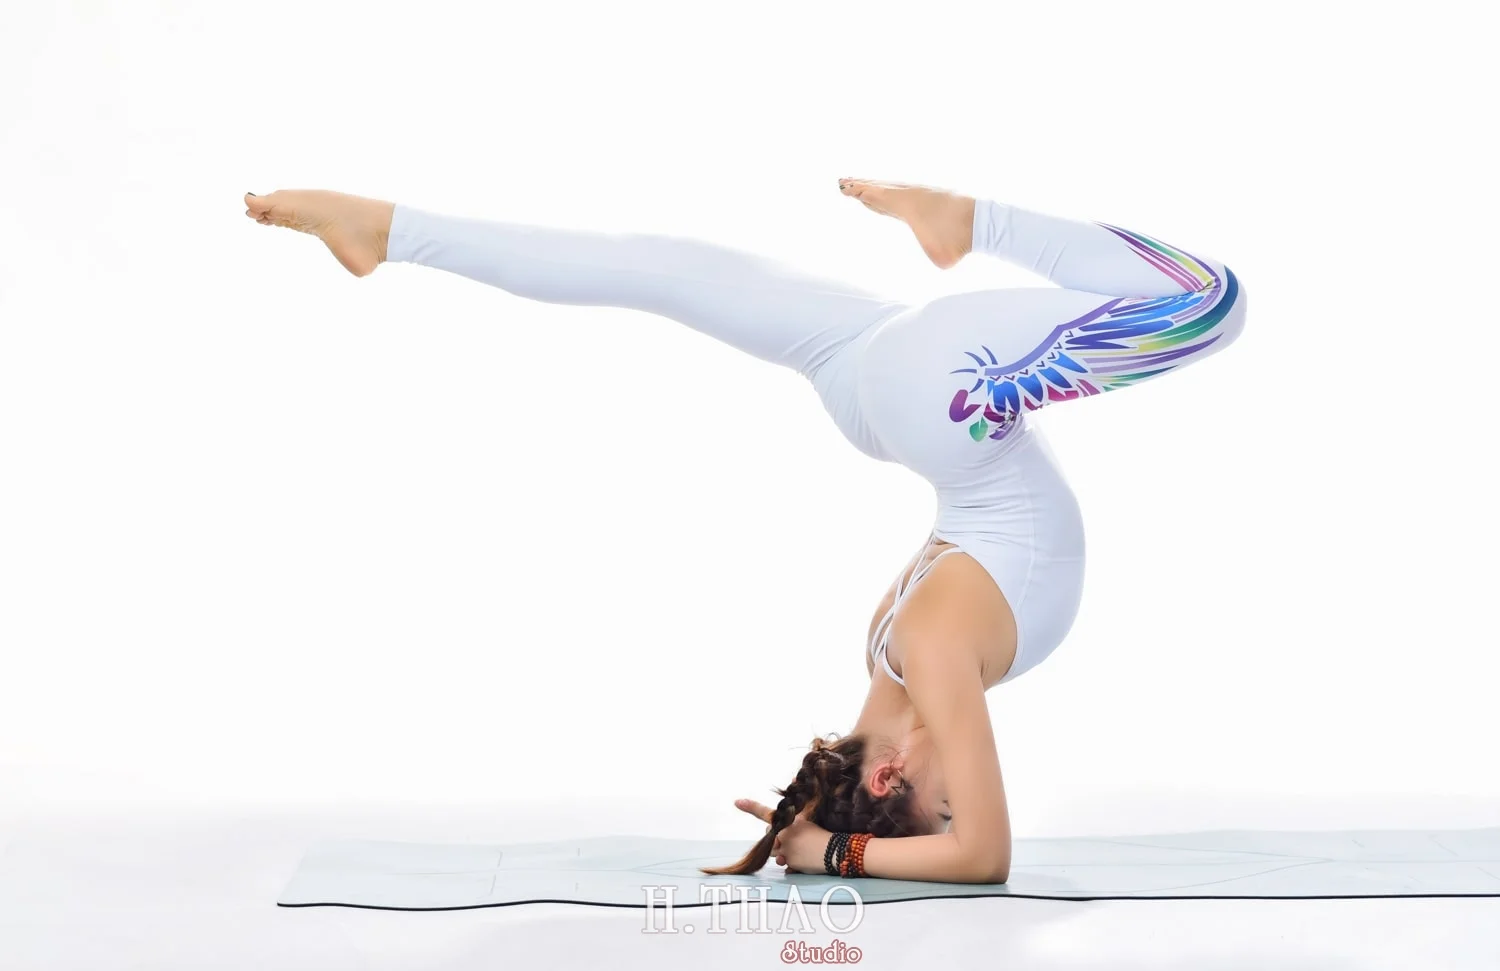 Anh yoga 8 min - Bộ ảnh Yoga chụp trong studio tuyệt đẹp – HThao Studio